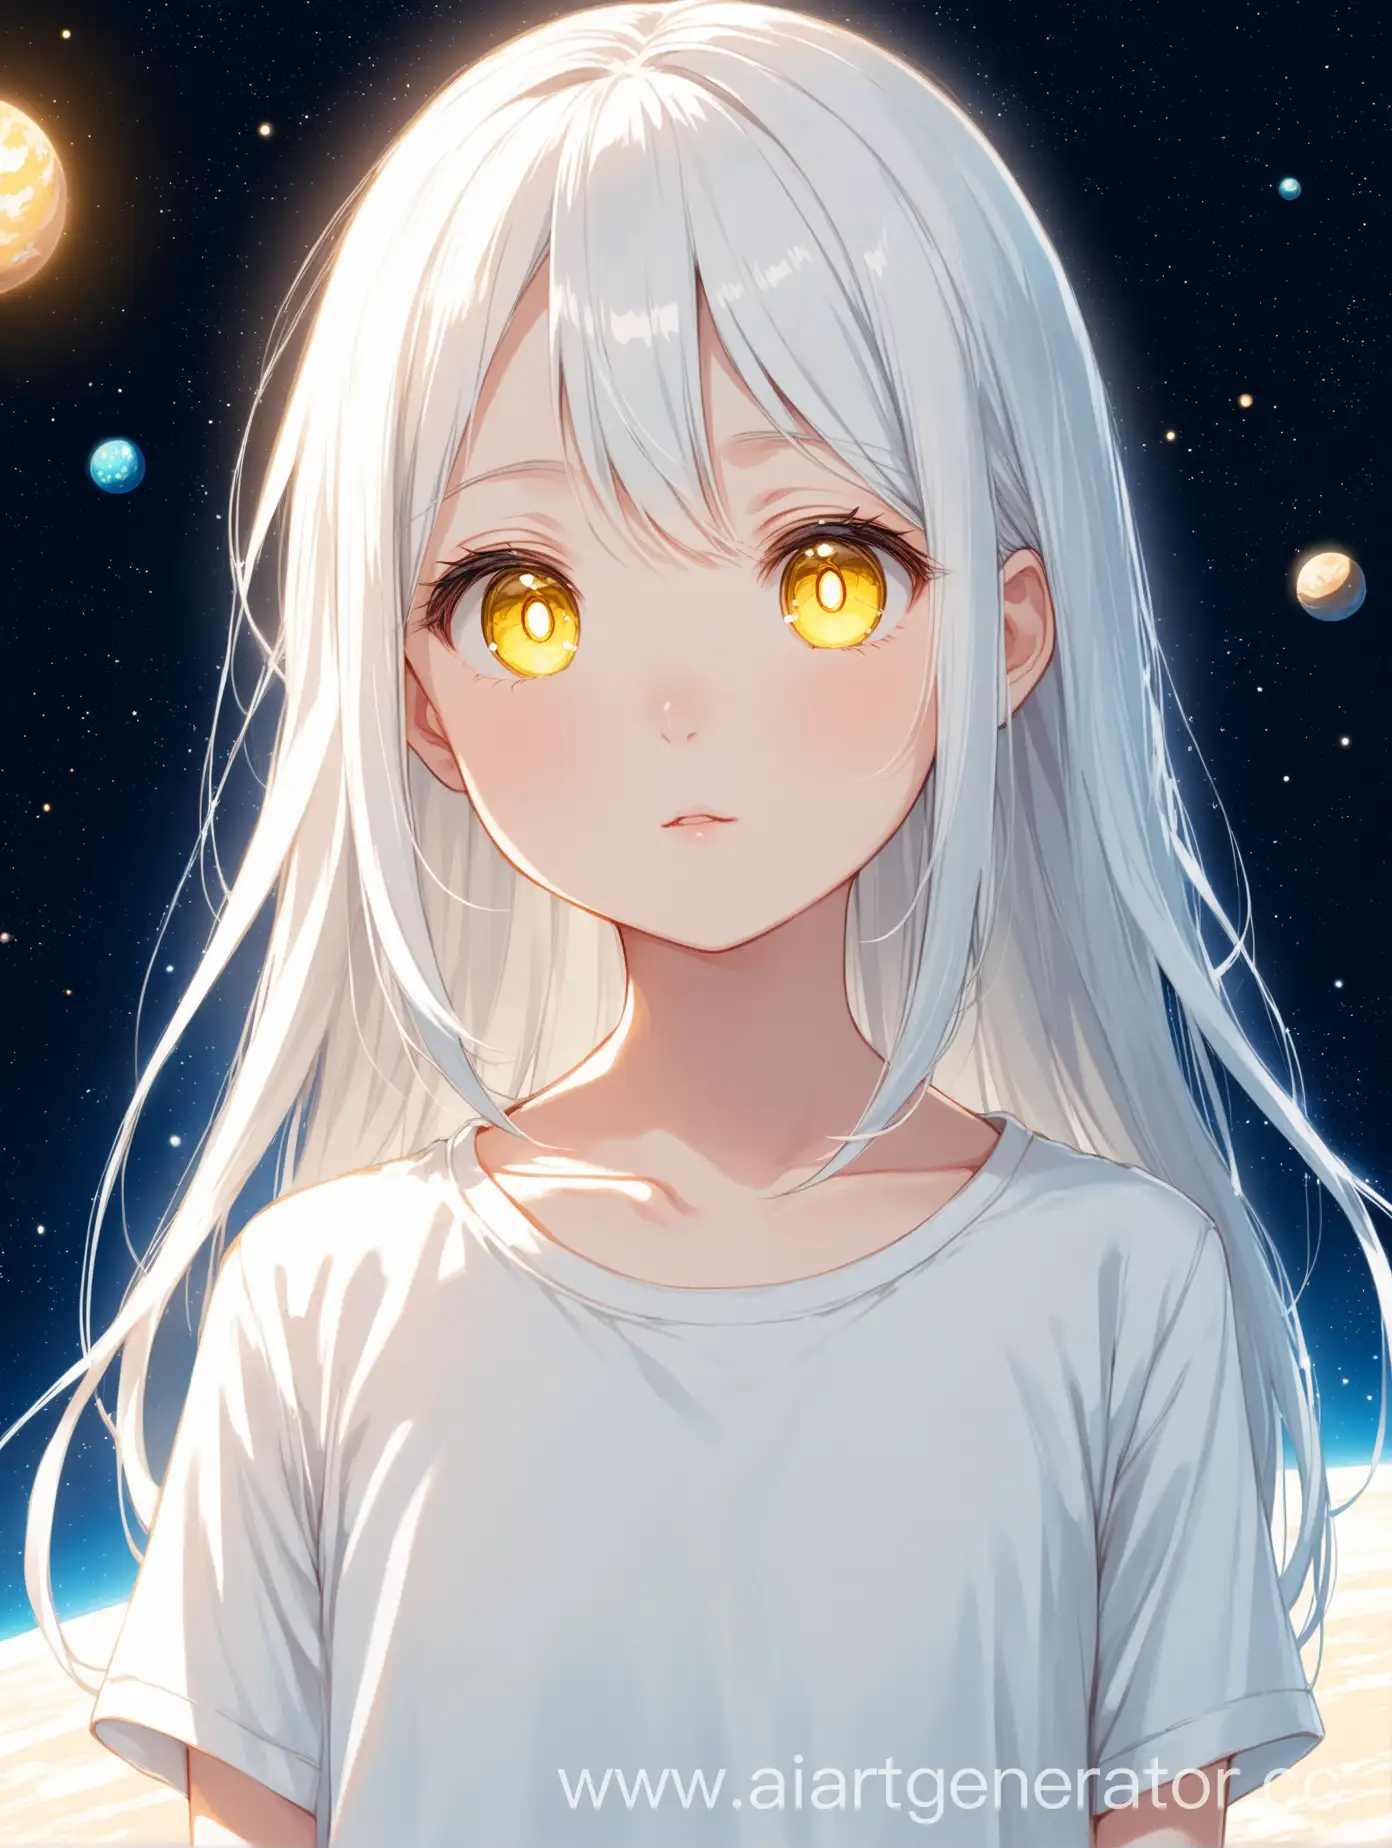 Девушка в стиле аниме которой относительно 13 лет в обычной белой футболке и имеет бледную кожу, длинные белые волосы и жёлтые зрачки со спокойным выражением лица стоит на фоне космоса по пояс